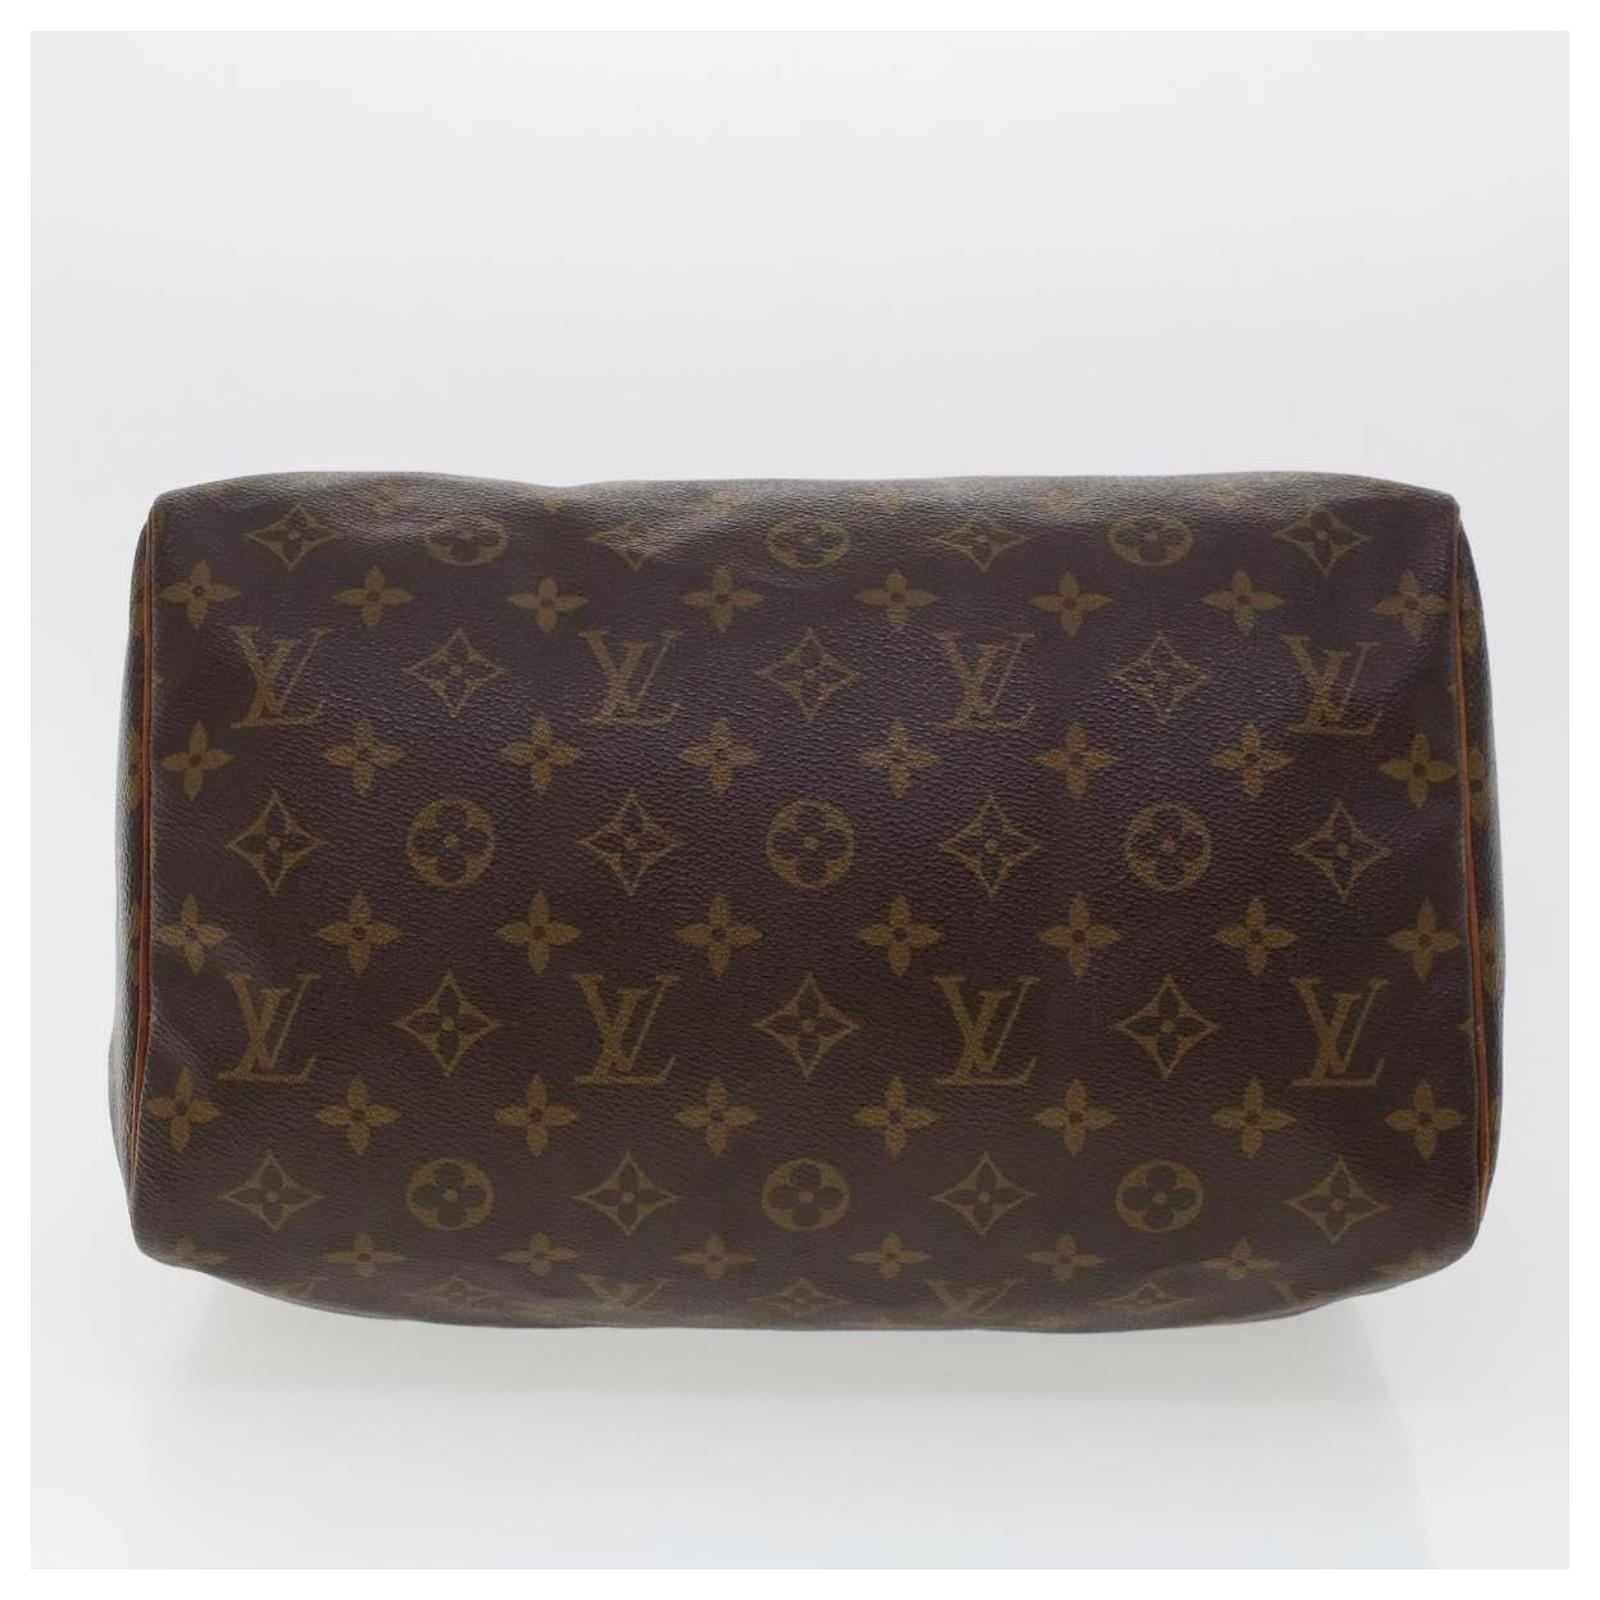 Louis Vuitton Monogram Speedy 30 Handbag Boston Bag Mini M41526